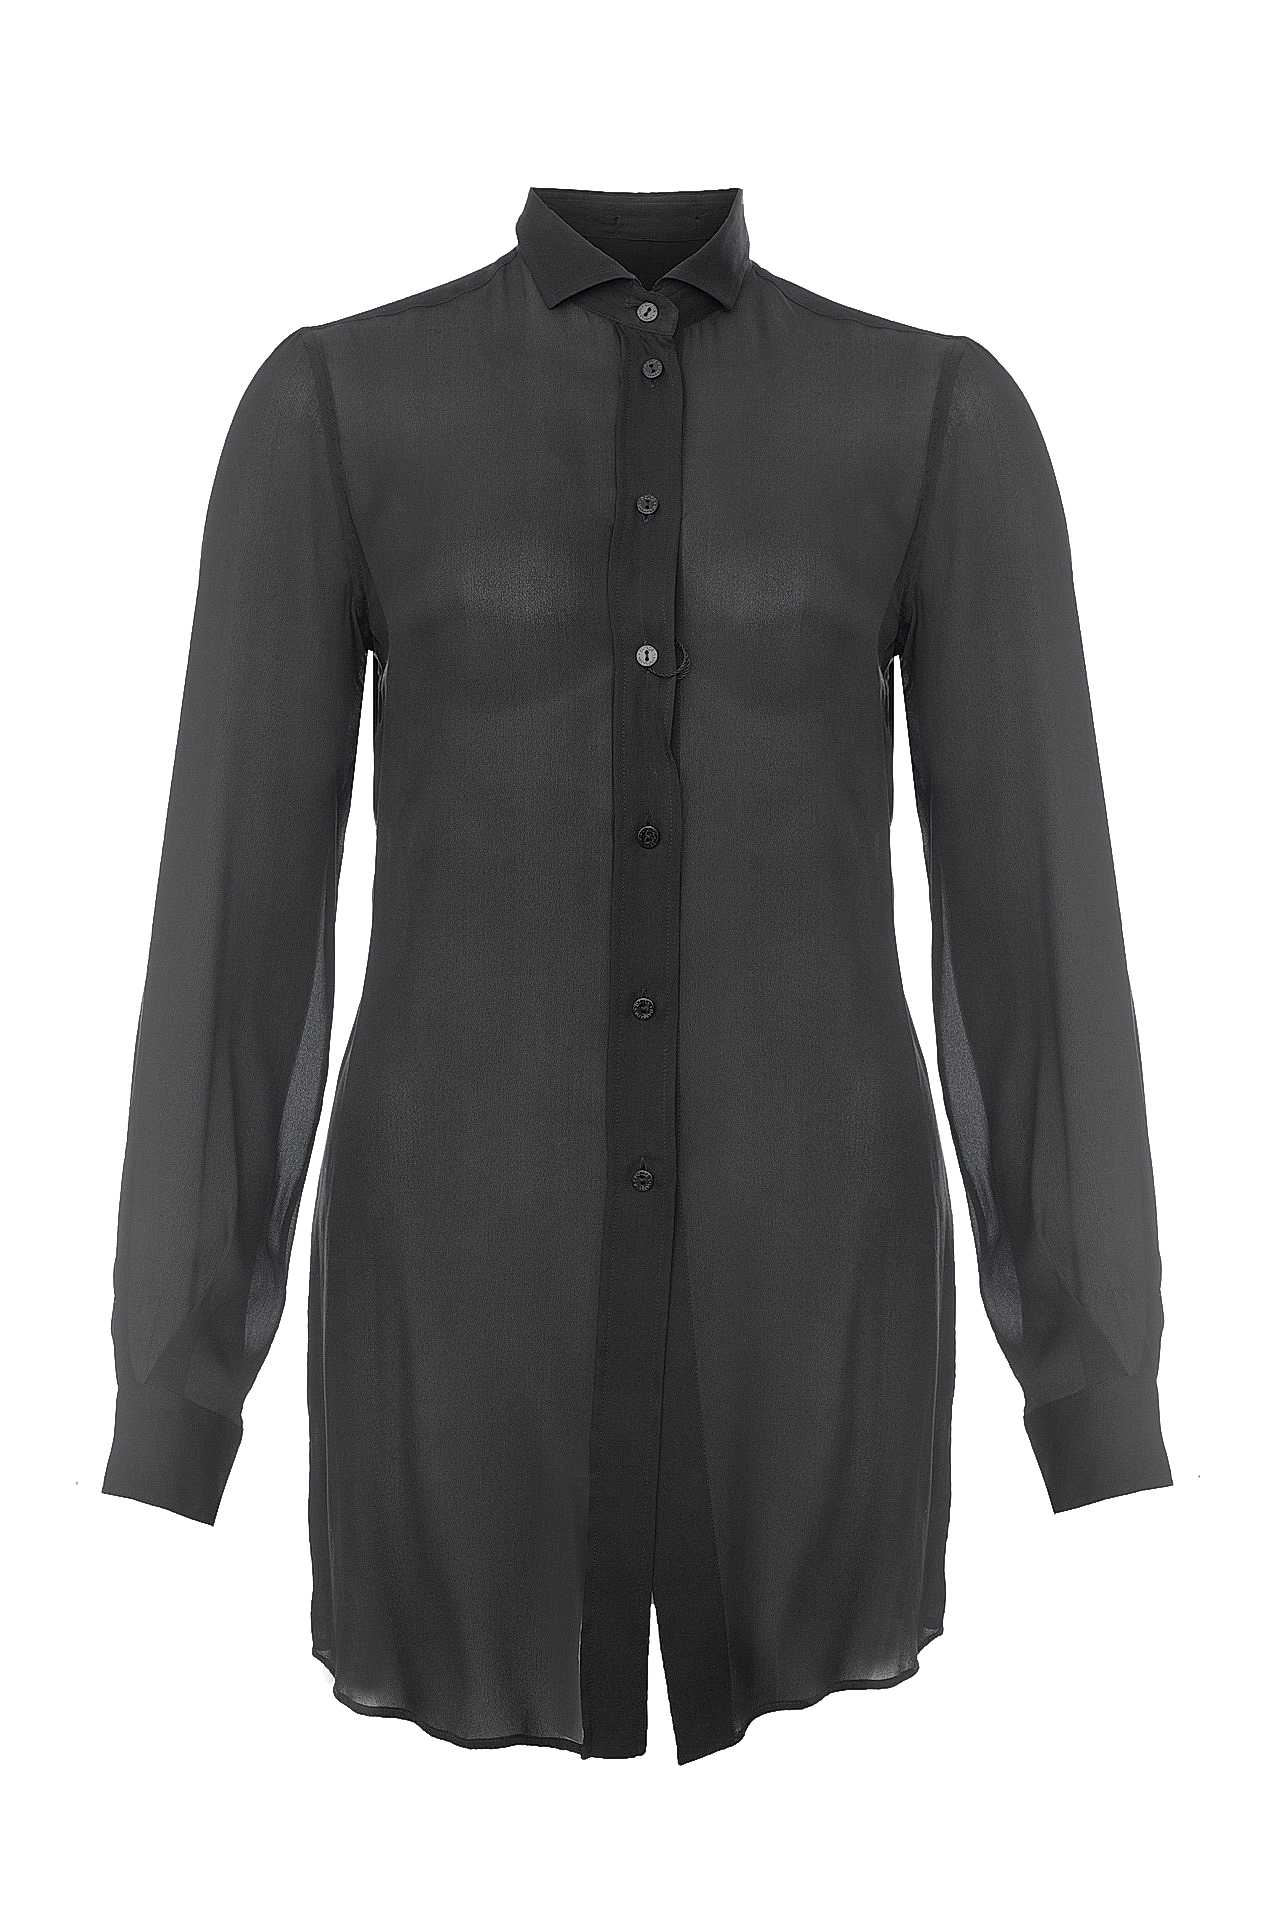 Одежда женская Рубашка DOLCE & GABBANA (SRF5342TFUAA2/19). Купить за 15000 руб.